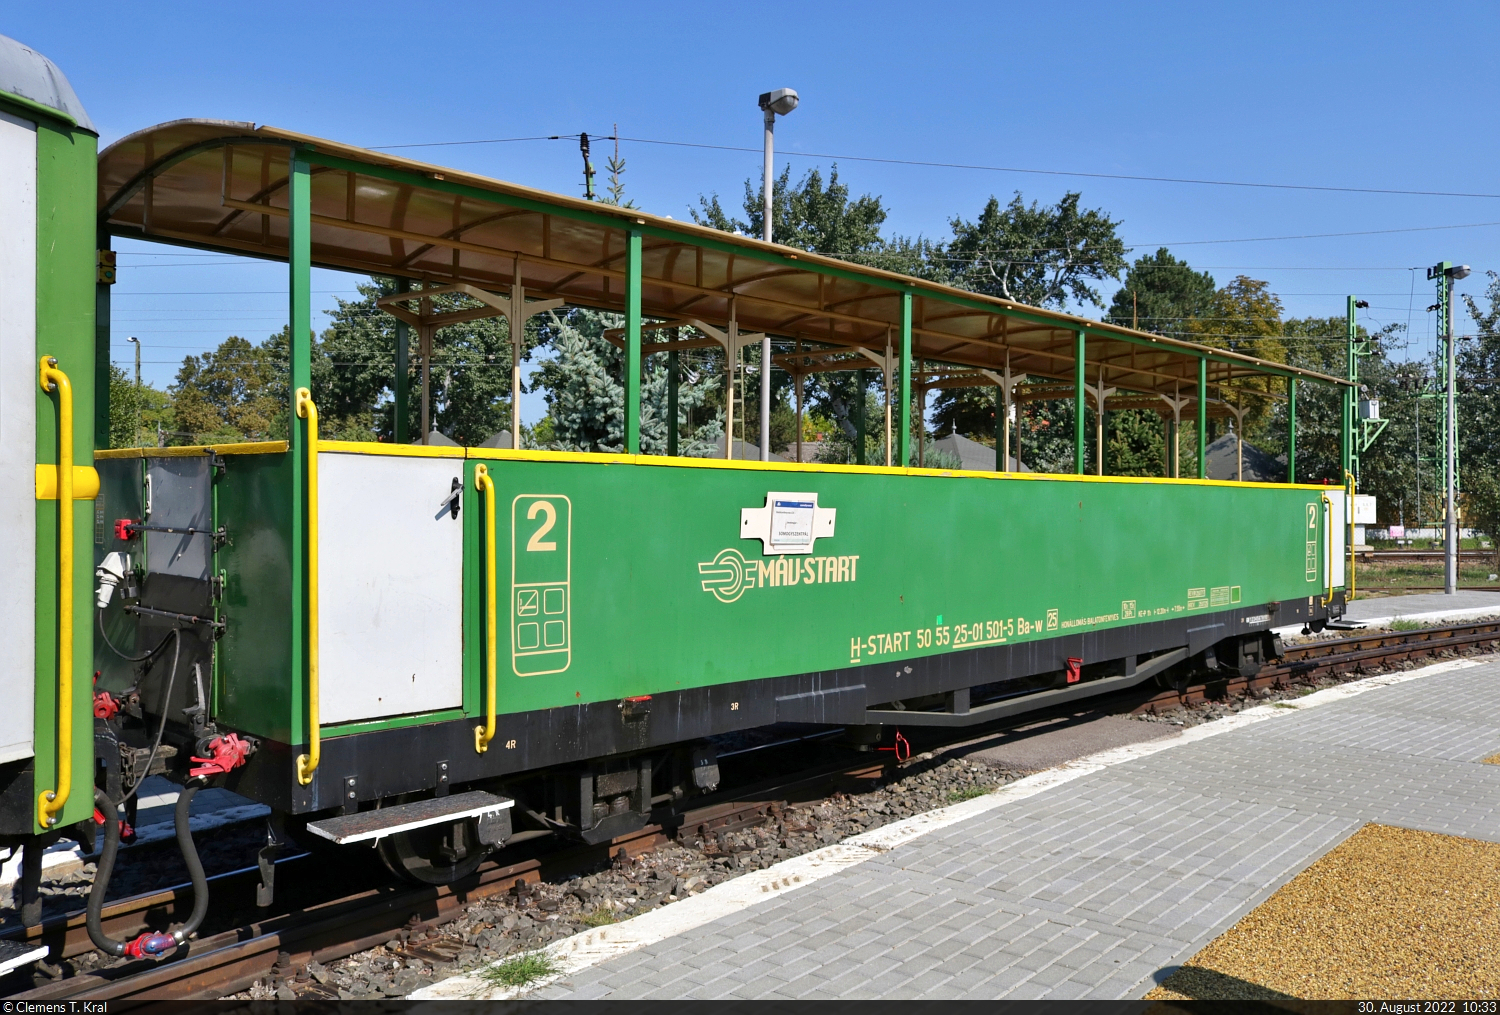 Schmalspurbahn Balatonfenyves (HU)
Offener Personenwagen mit der Bezeichnung  Ba-w  (50 55 25-01 501-5 H-START) im Bahnhof Balatonfenyves GV.

🧰 MÁV
🚝 R 30814 Balatonfenyves GV (HU)–Somogyszentpál (HU)
🕓 30.8.2022 | 10:33 Uhr